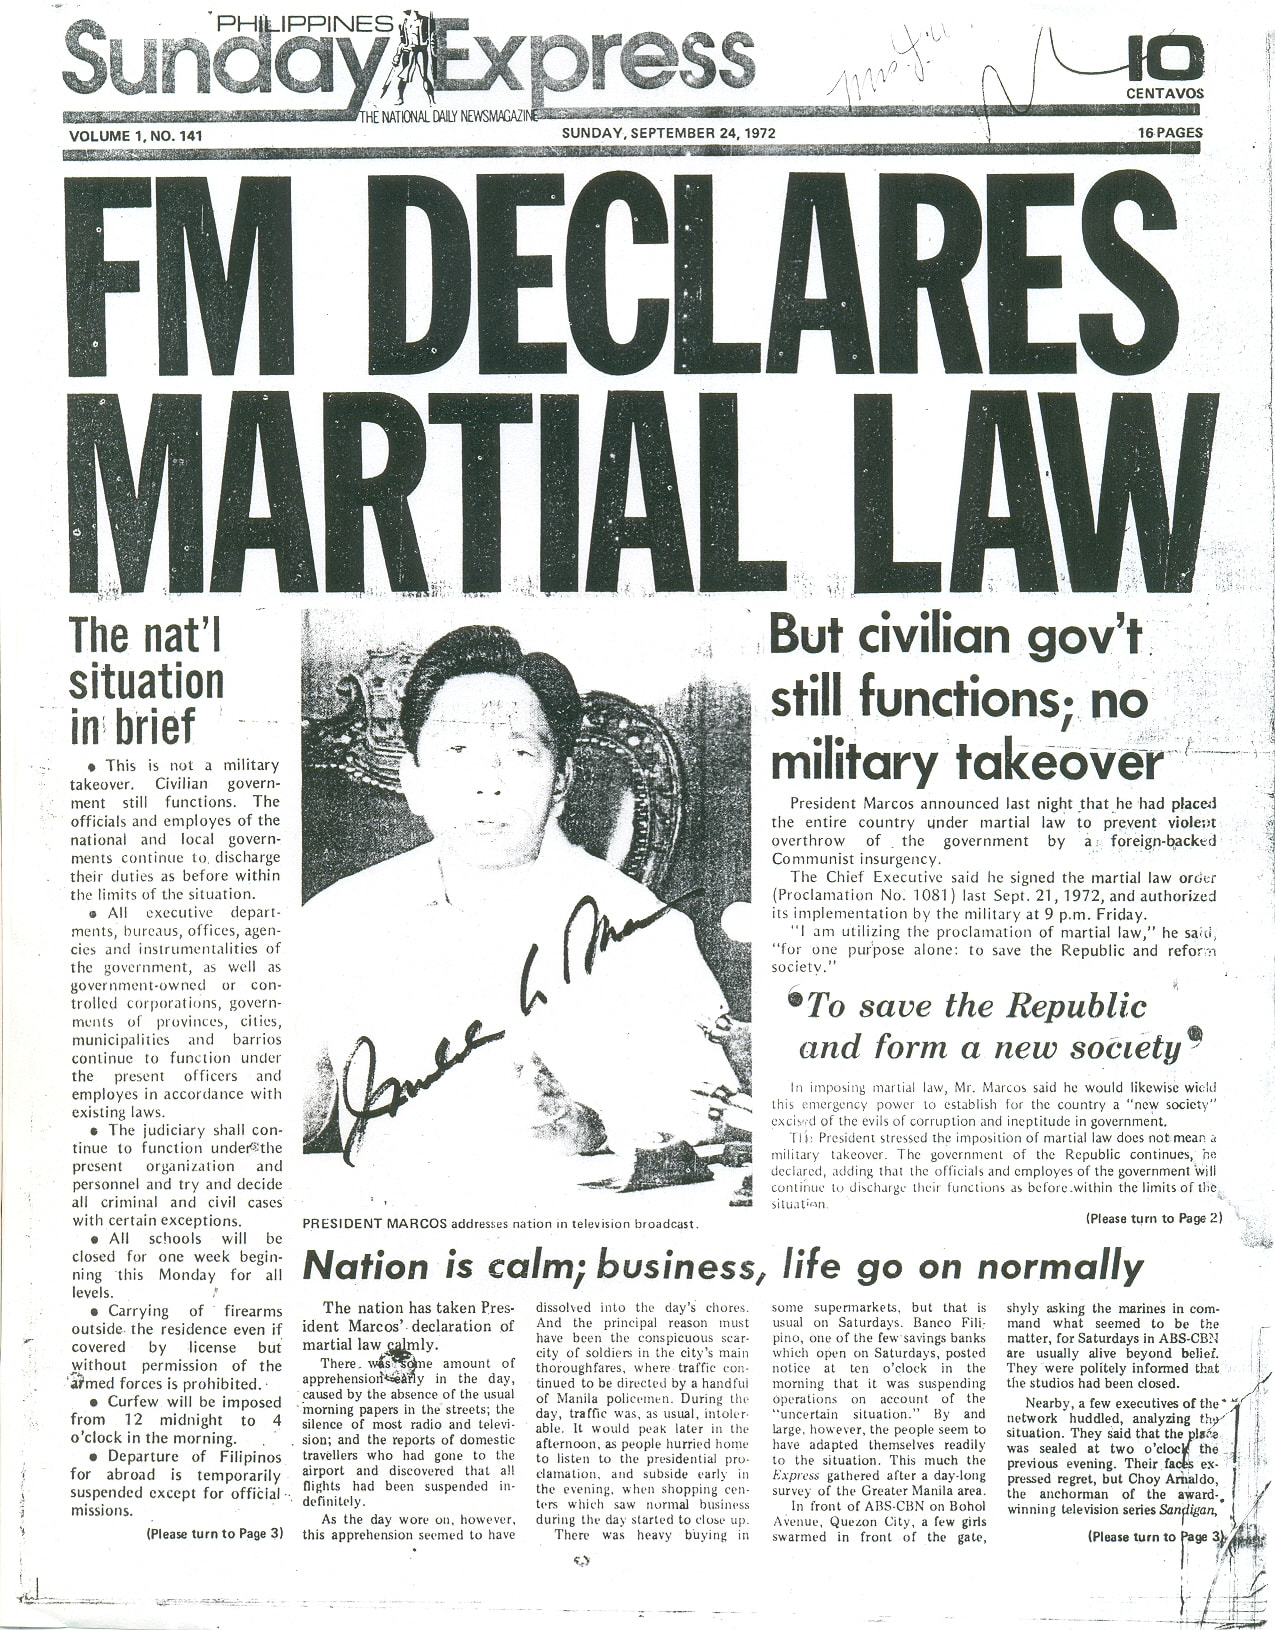 martial law hawaii 1941